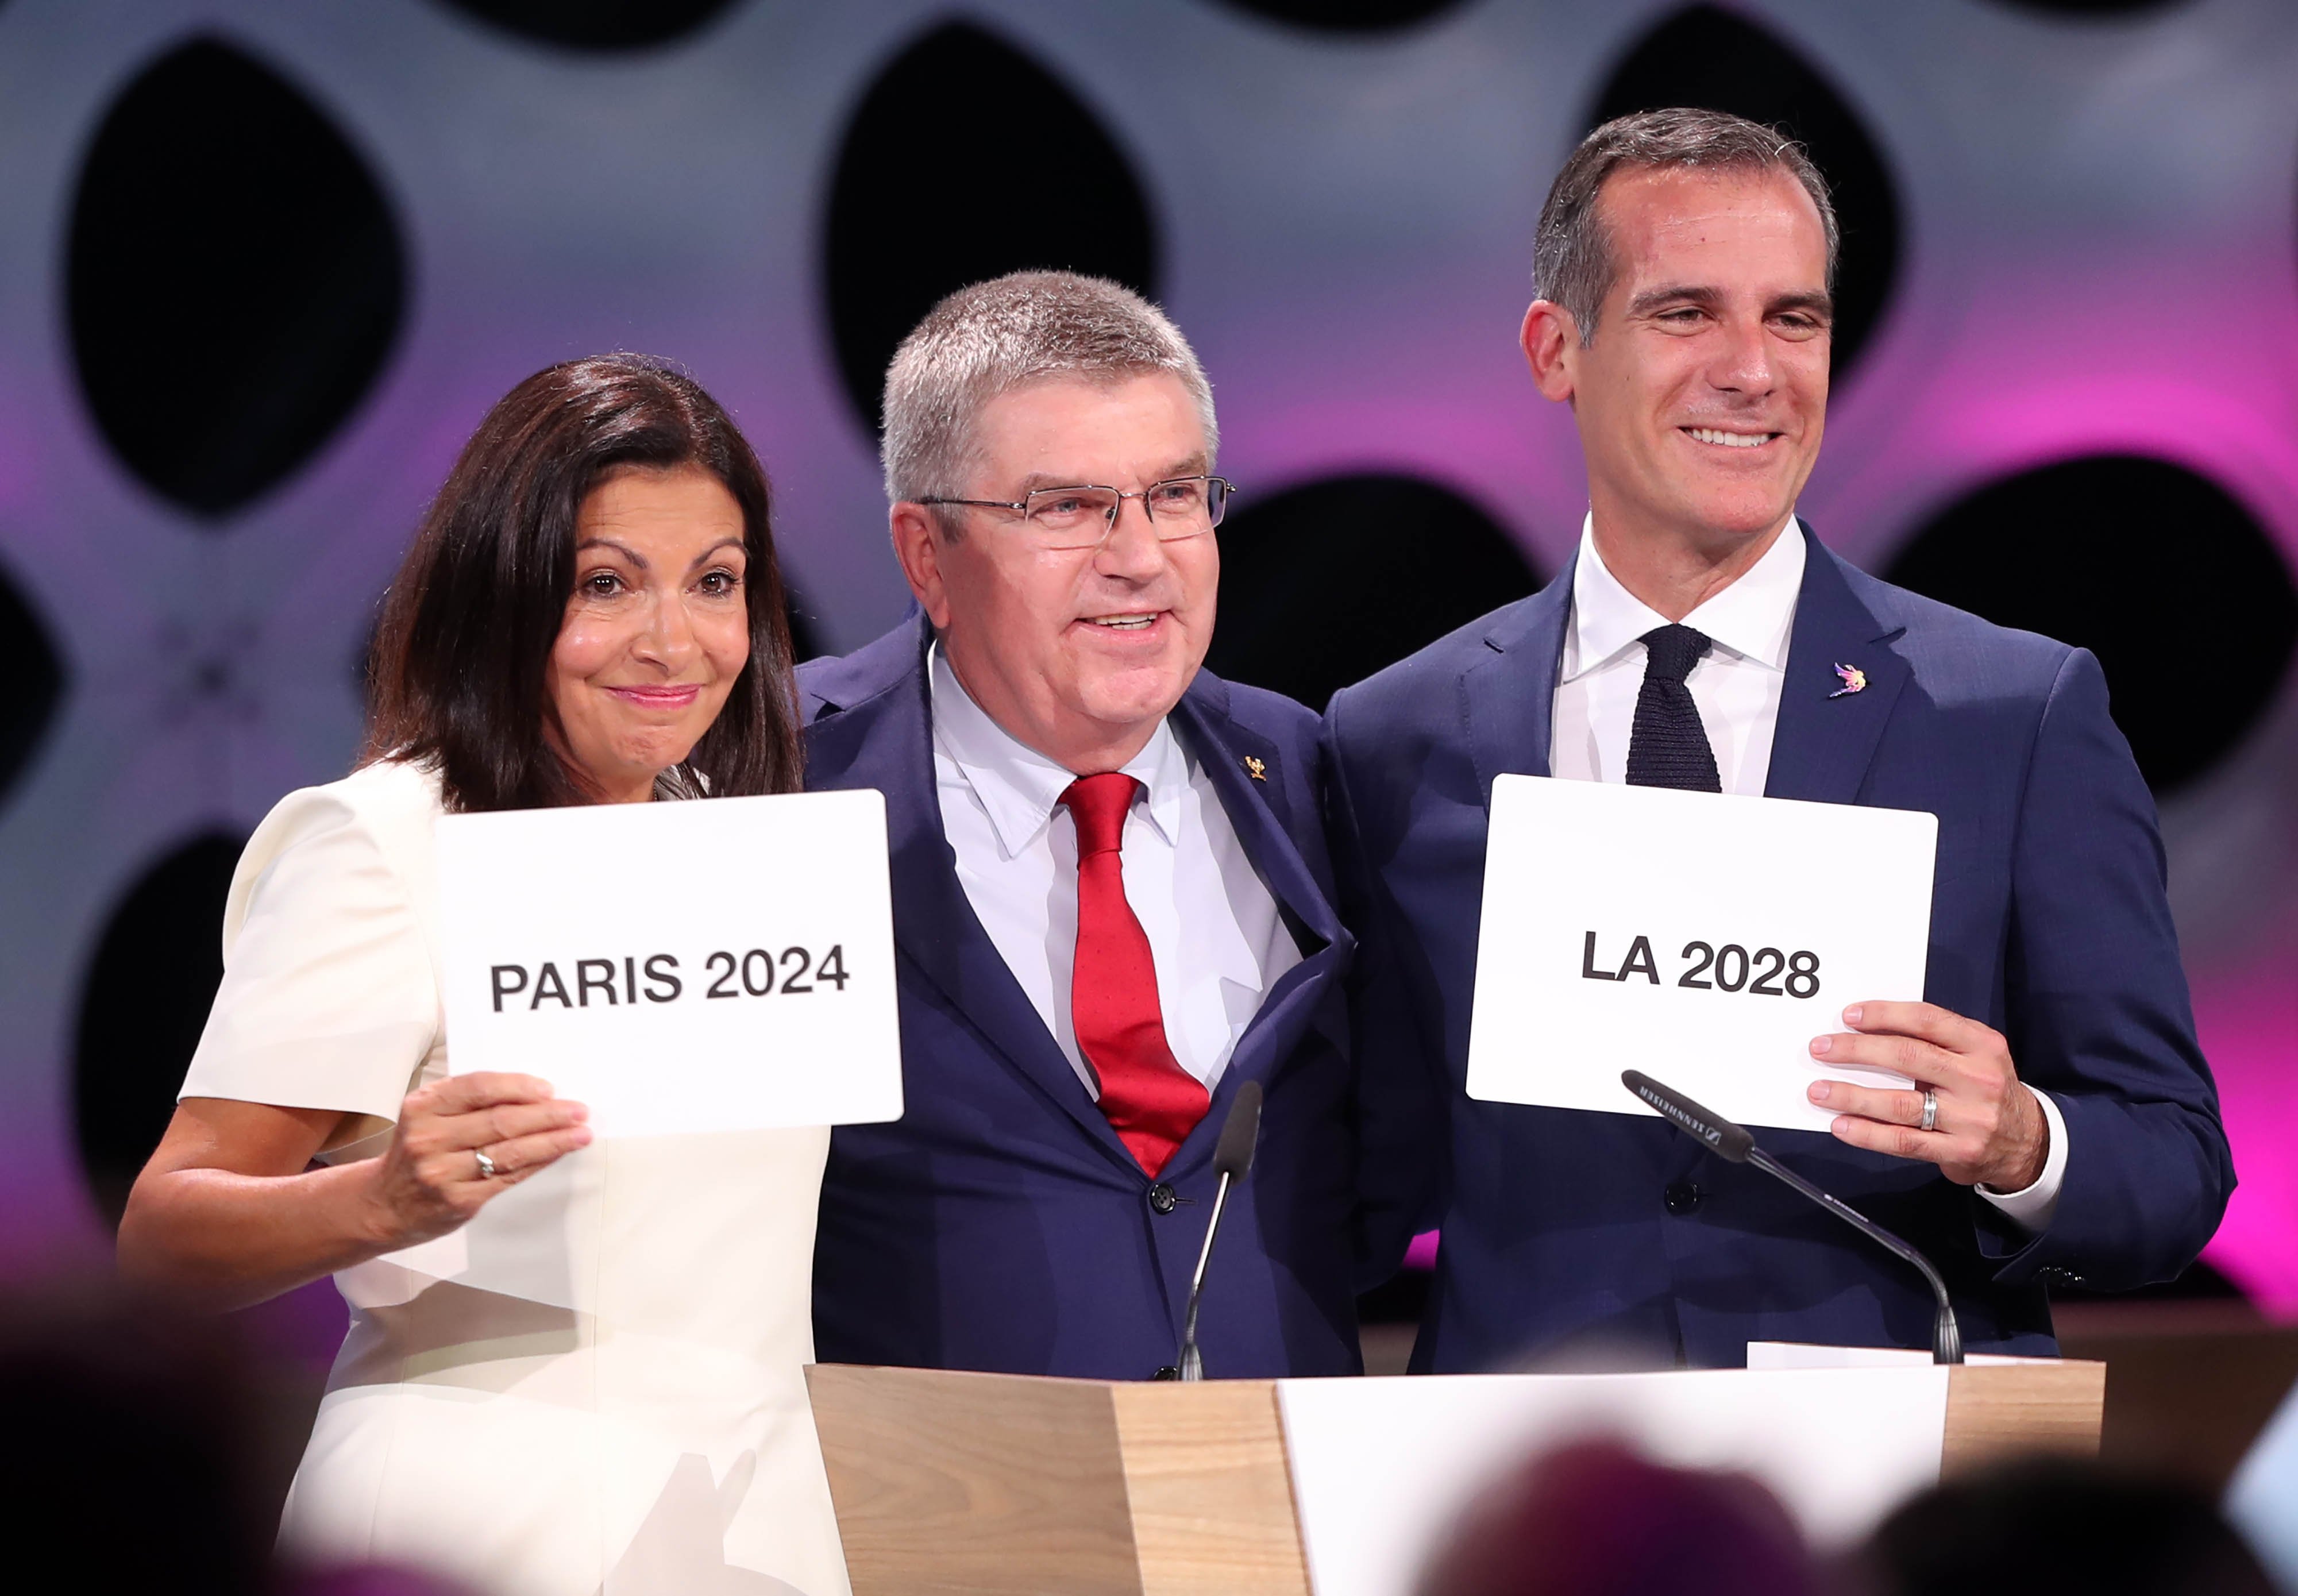 El COI confirma els Jocs Olímpics de París 2024 i Los Angeles 2028